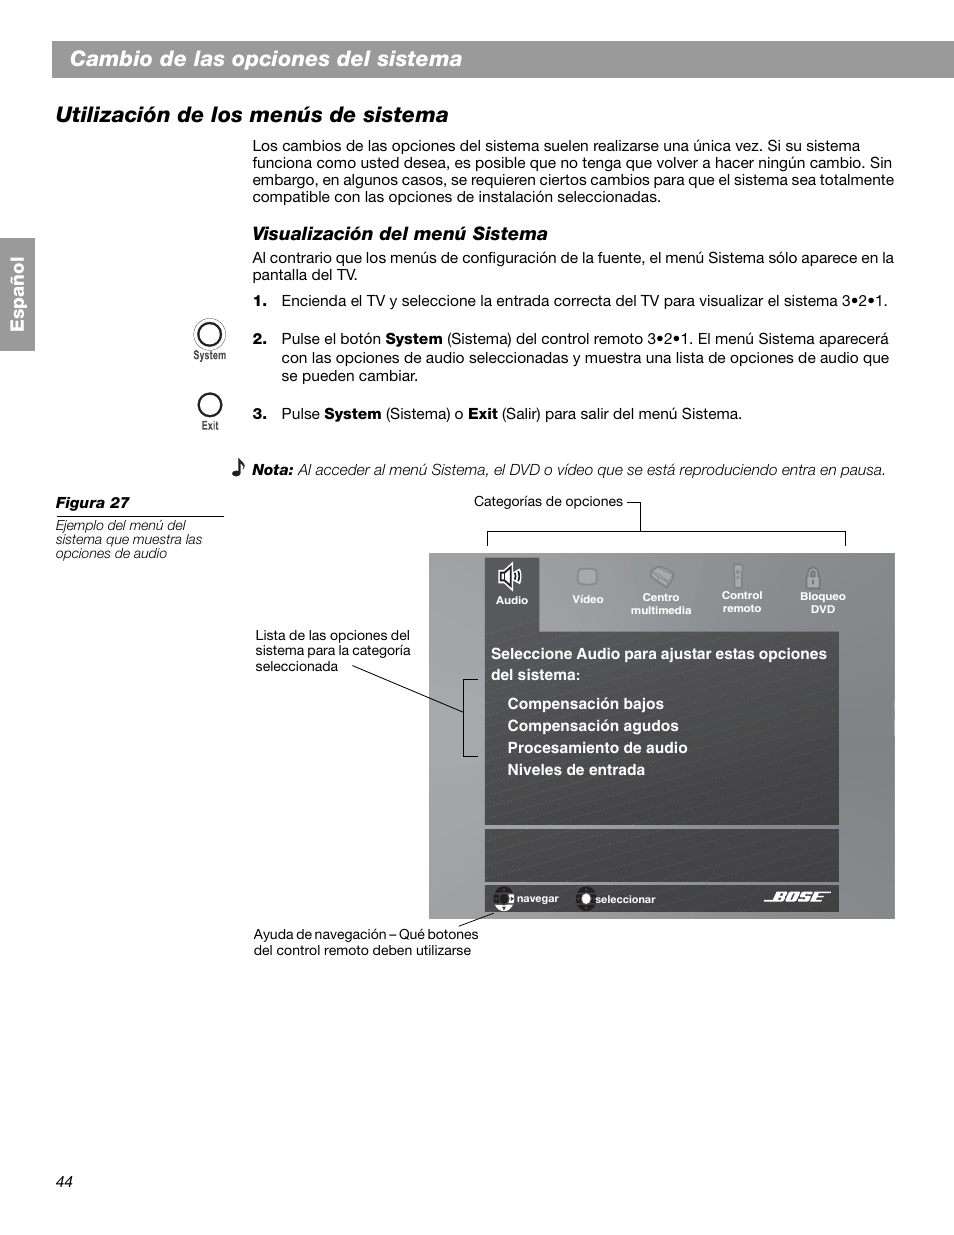 Español, Visualización del menú sistema | Bose 3.2.1 GS Series II User  Manual | Page 100 / 180 | Original mode